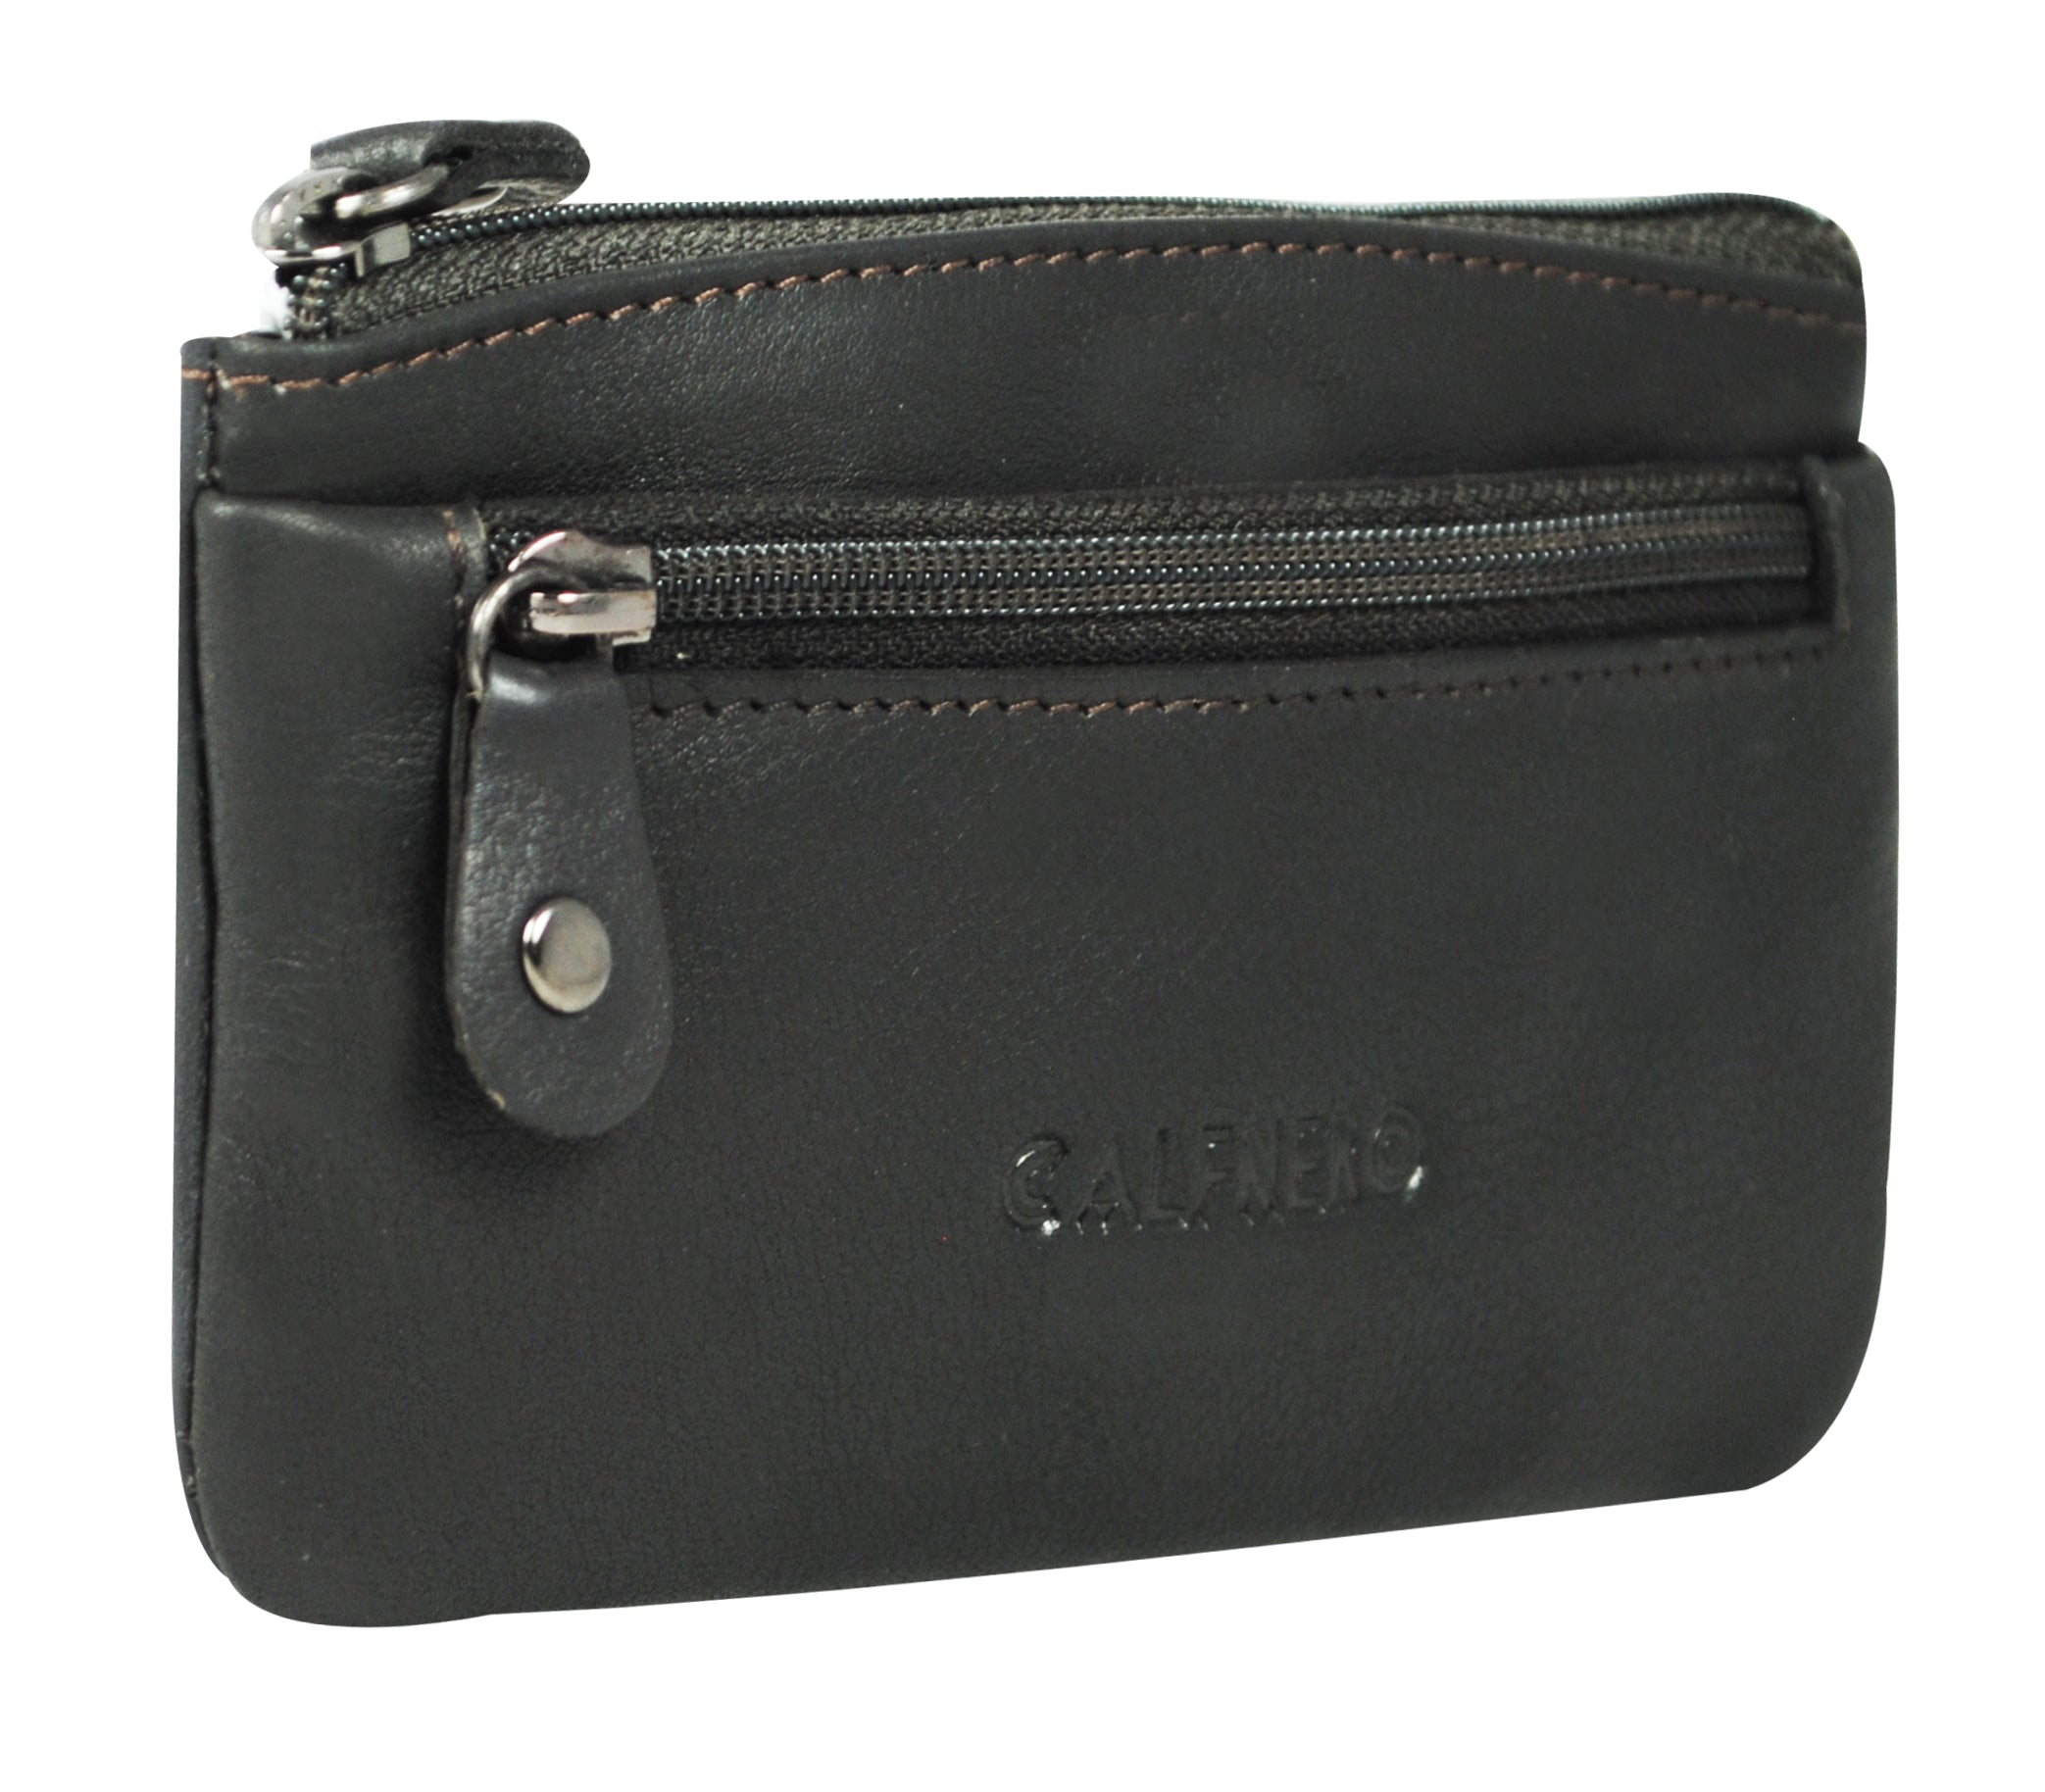 White Leather Zip Wallet with card holder | Valextra Zip Around